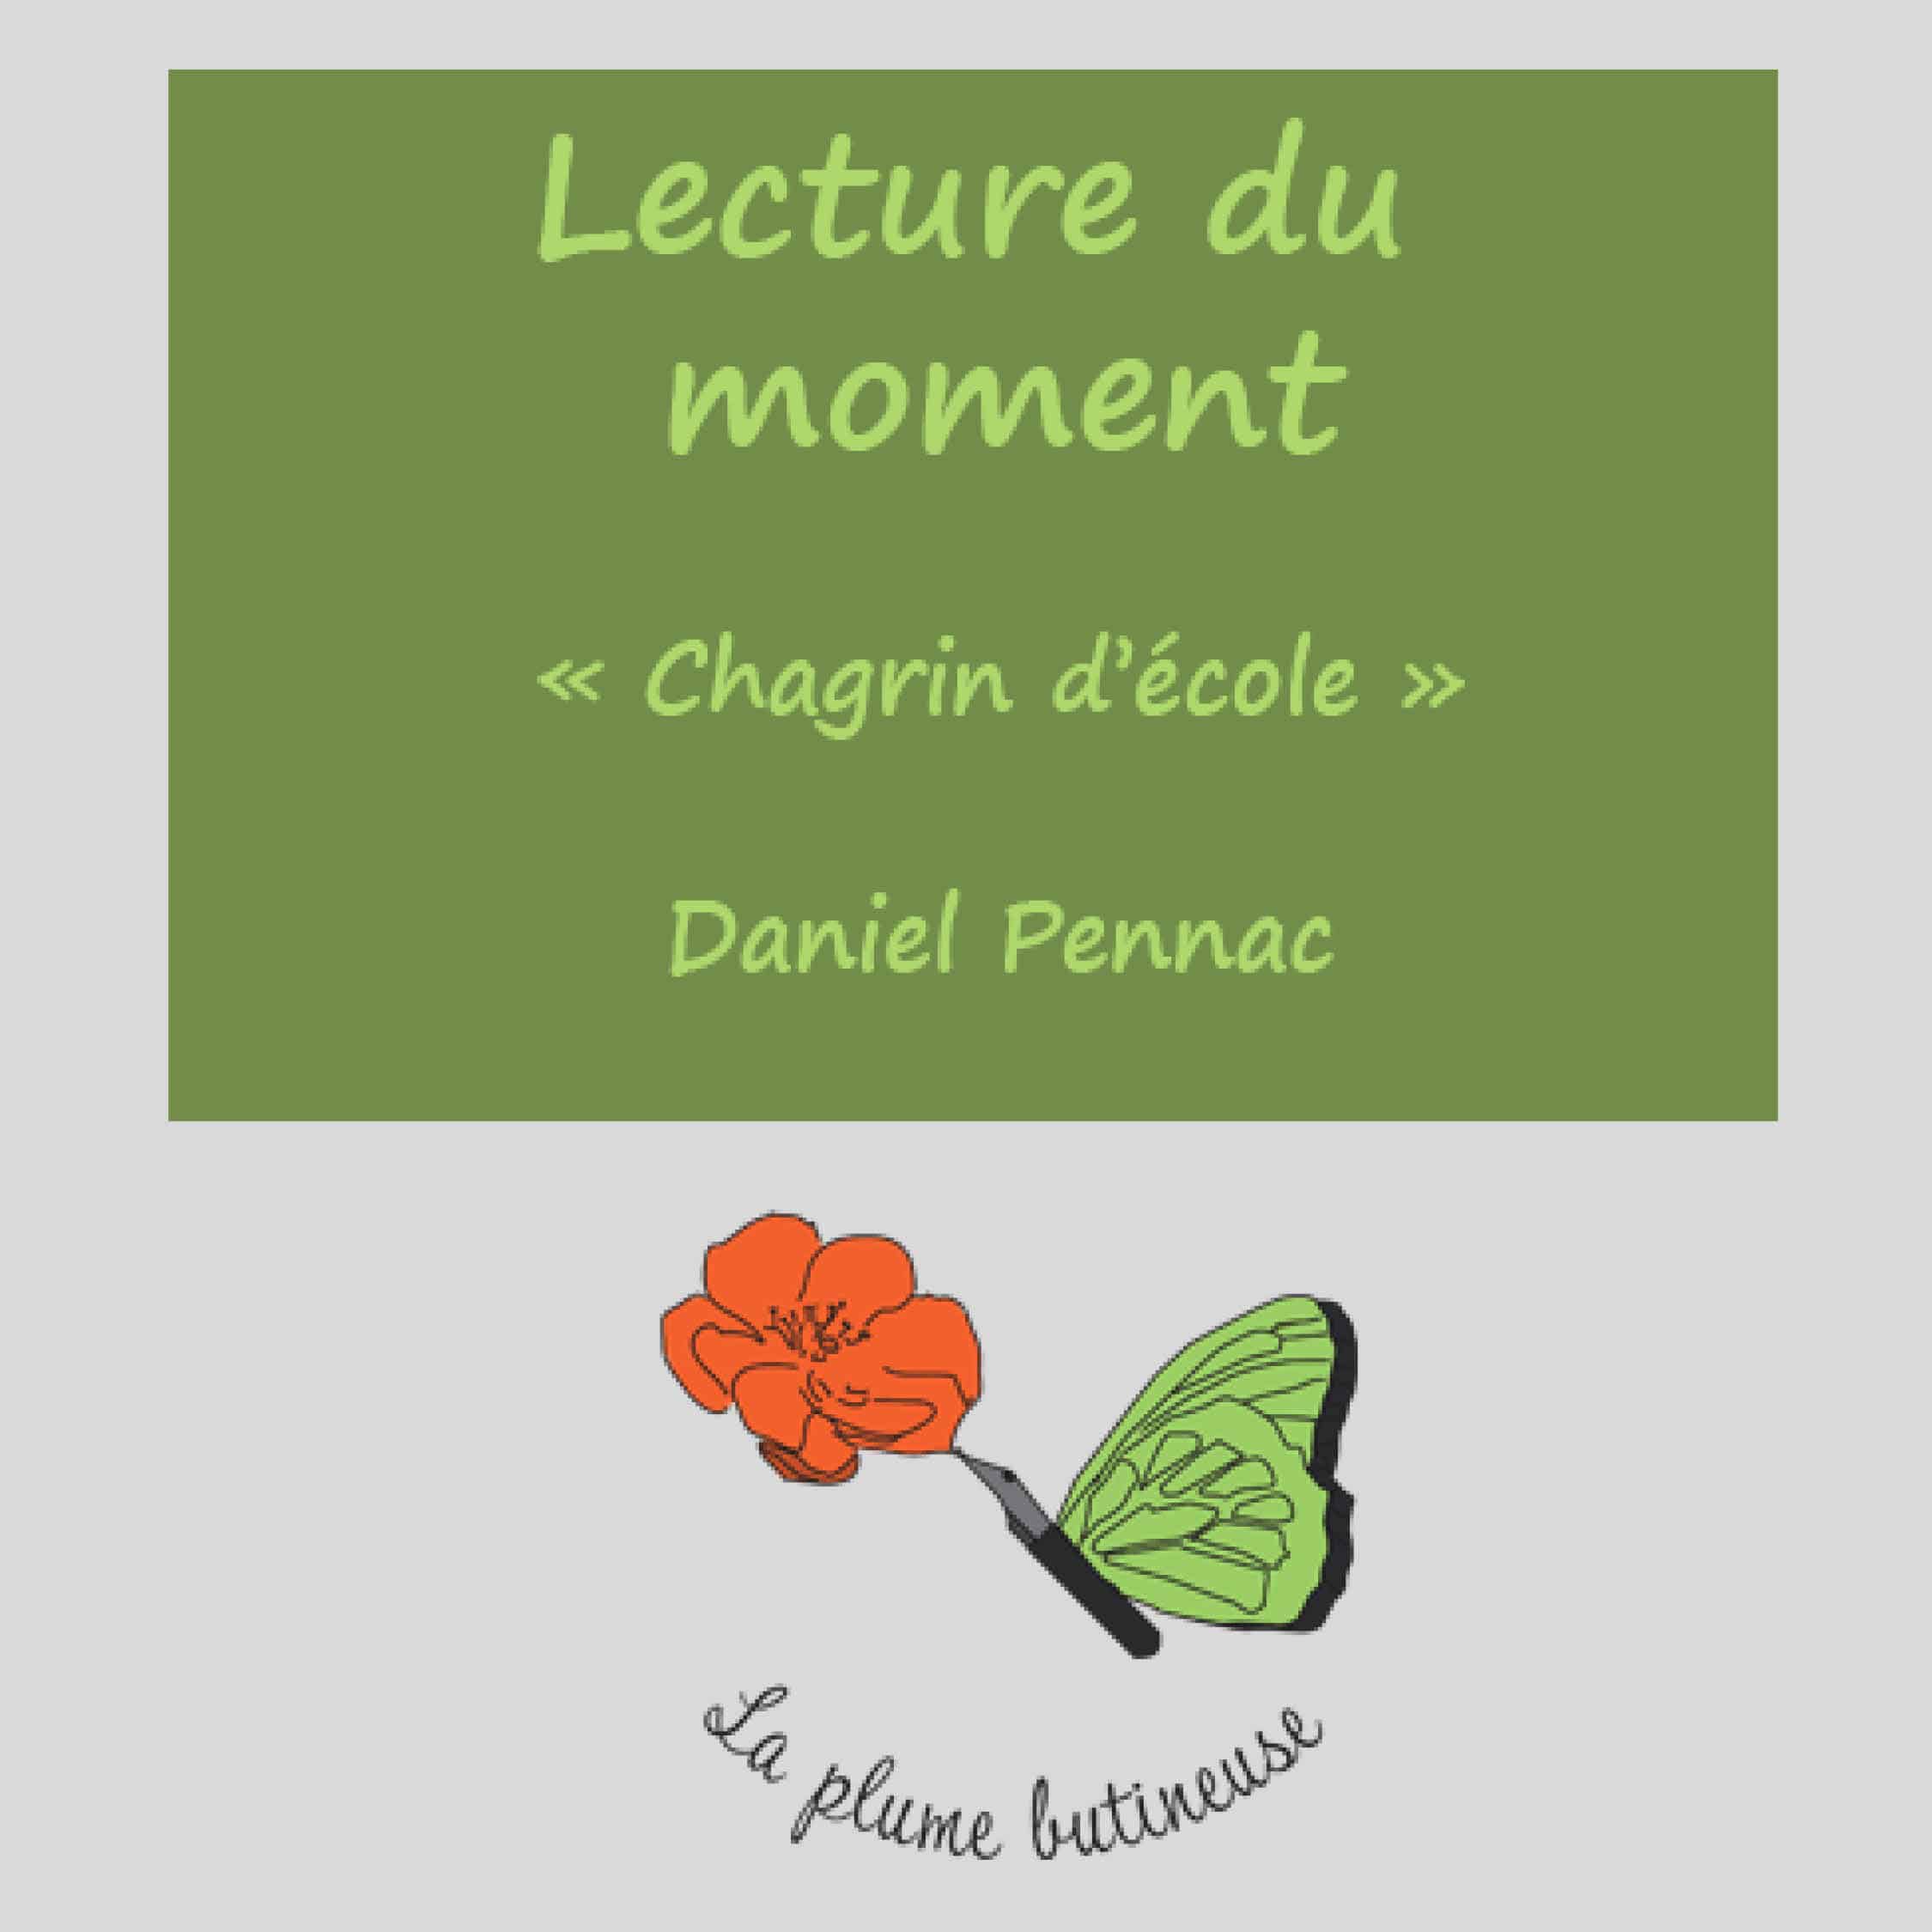 Lecture du livre de Daniel Pennac "Chagrin d'école"